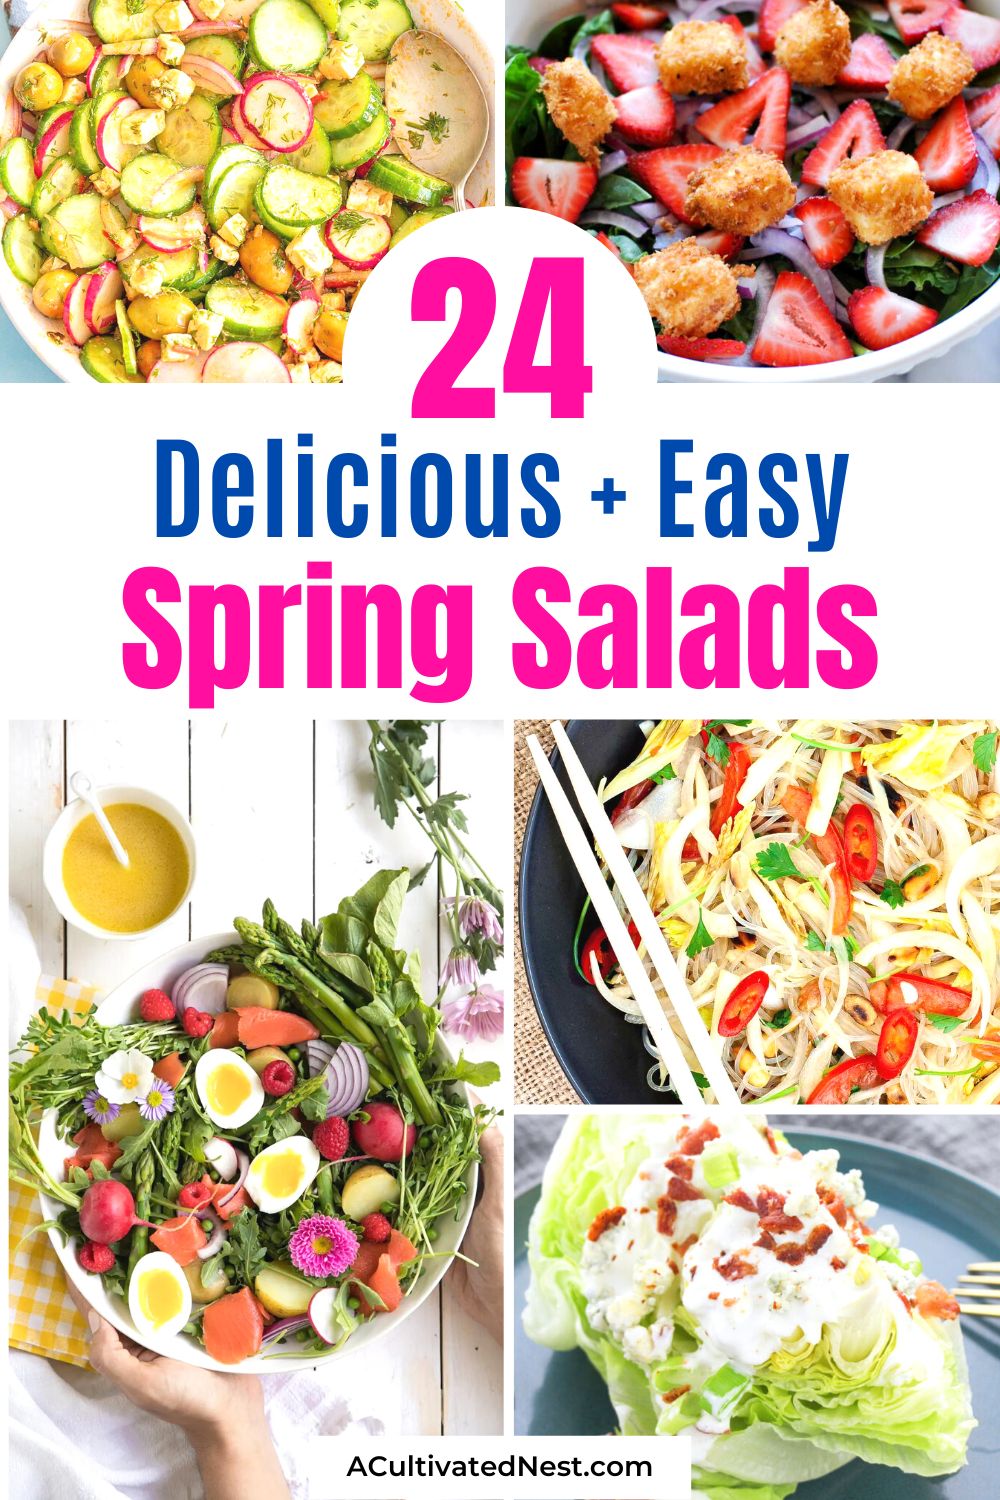  24 recettes faciles de salade printanière - Vous cherchez des salades printanières saines et savoureuses ?  Ne cherchez pas plus loin que ces recettes faciles!  Avec une variété d'ingrédients et de saveurs, il y en a pour tous les goûts.  |  #salade #recettesdesalade #recettes #saines #ACultivatedNest